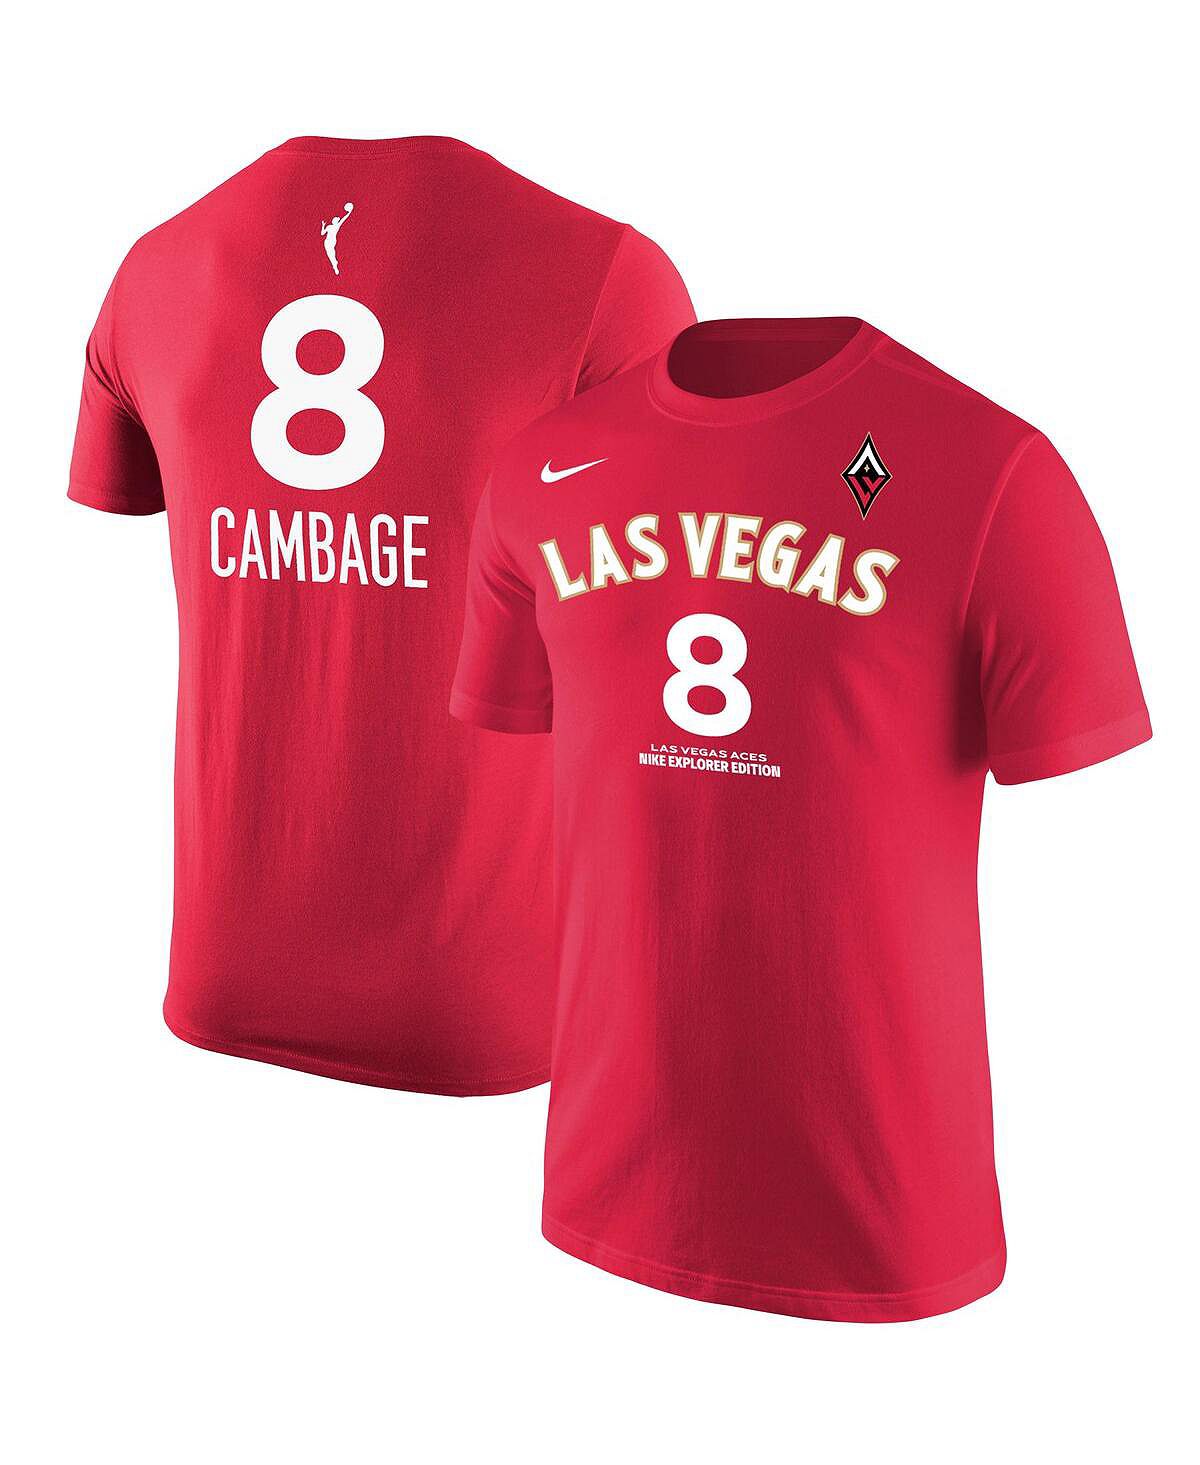 Мужская красная футболка Liz Cambage Las Vegas Aces Explorer Edition с именем и номером Nike